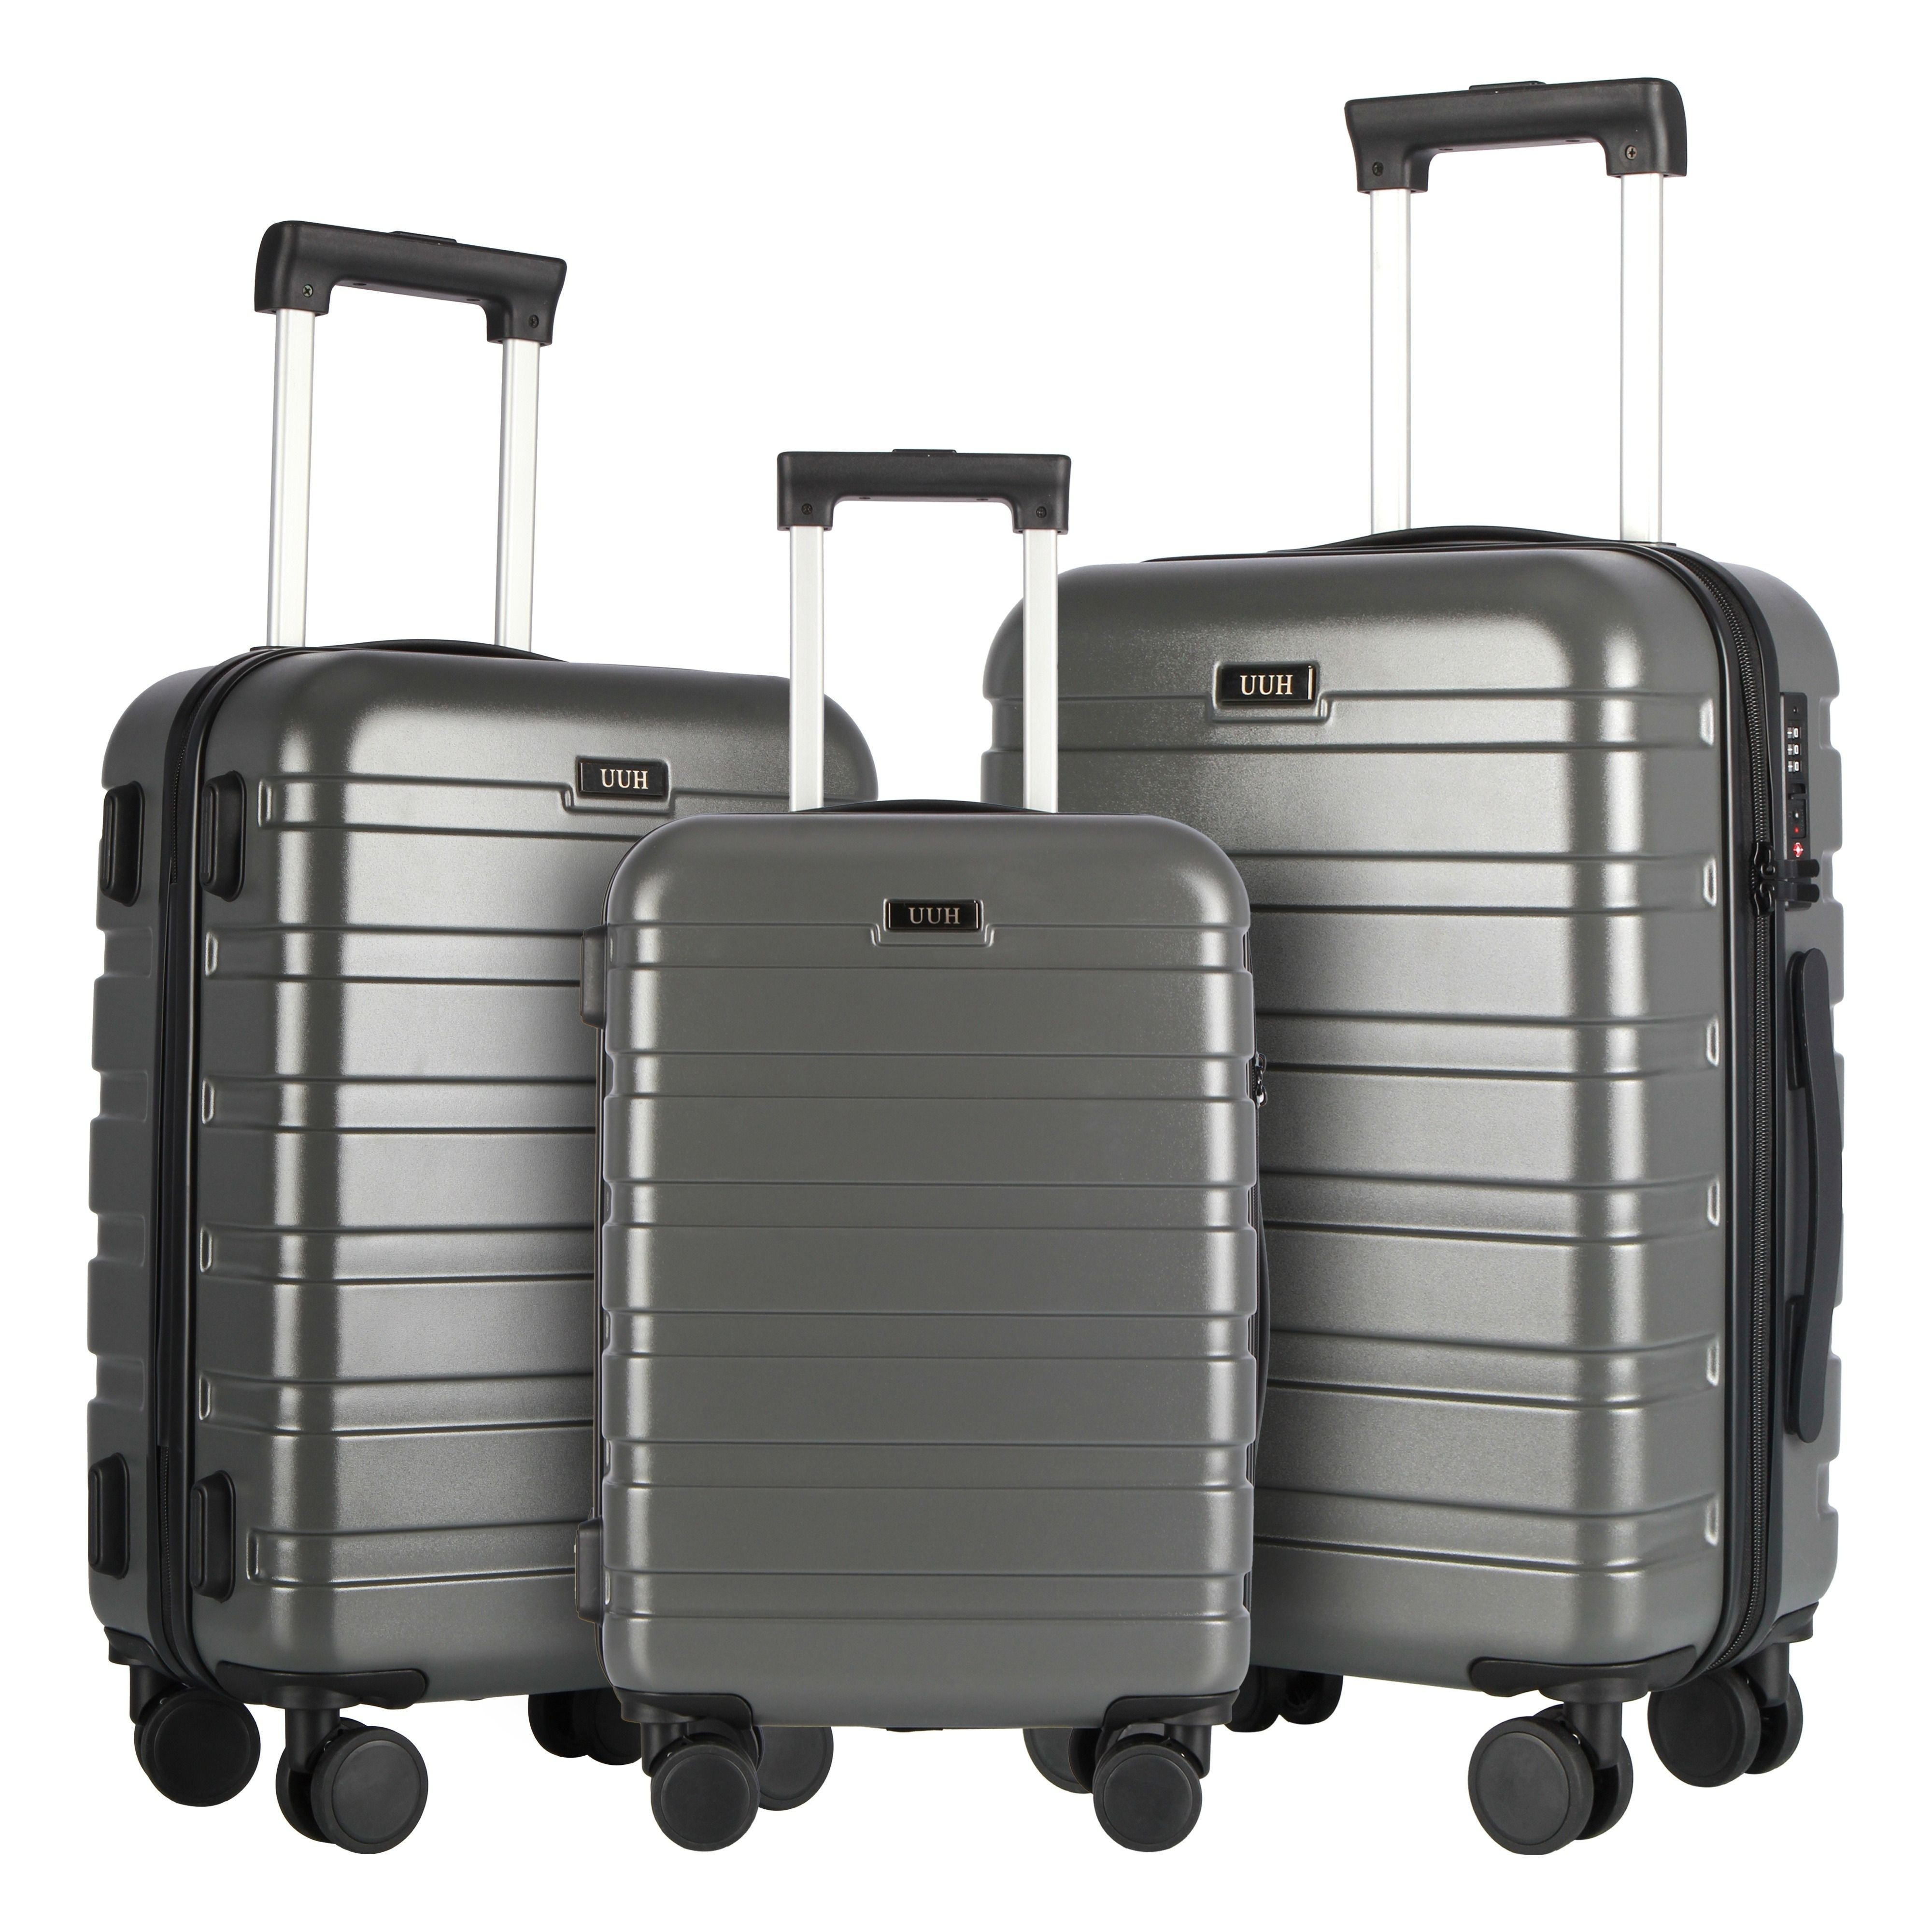 

Uuh 3pcs Suitcase Set, Lightweight Luggage With Tsa Lock, 20/24/28 Inch, Large Capacity Durable Luggage, Waterproof Family Luggage Set